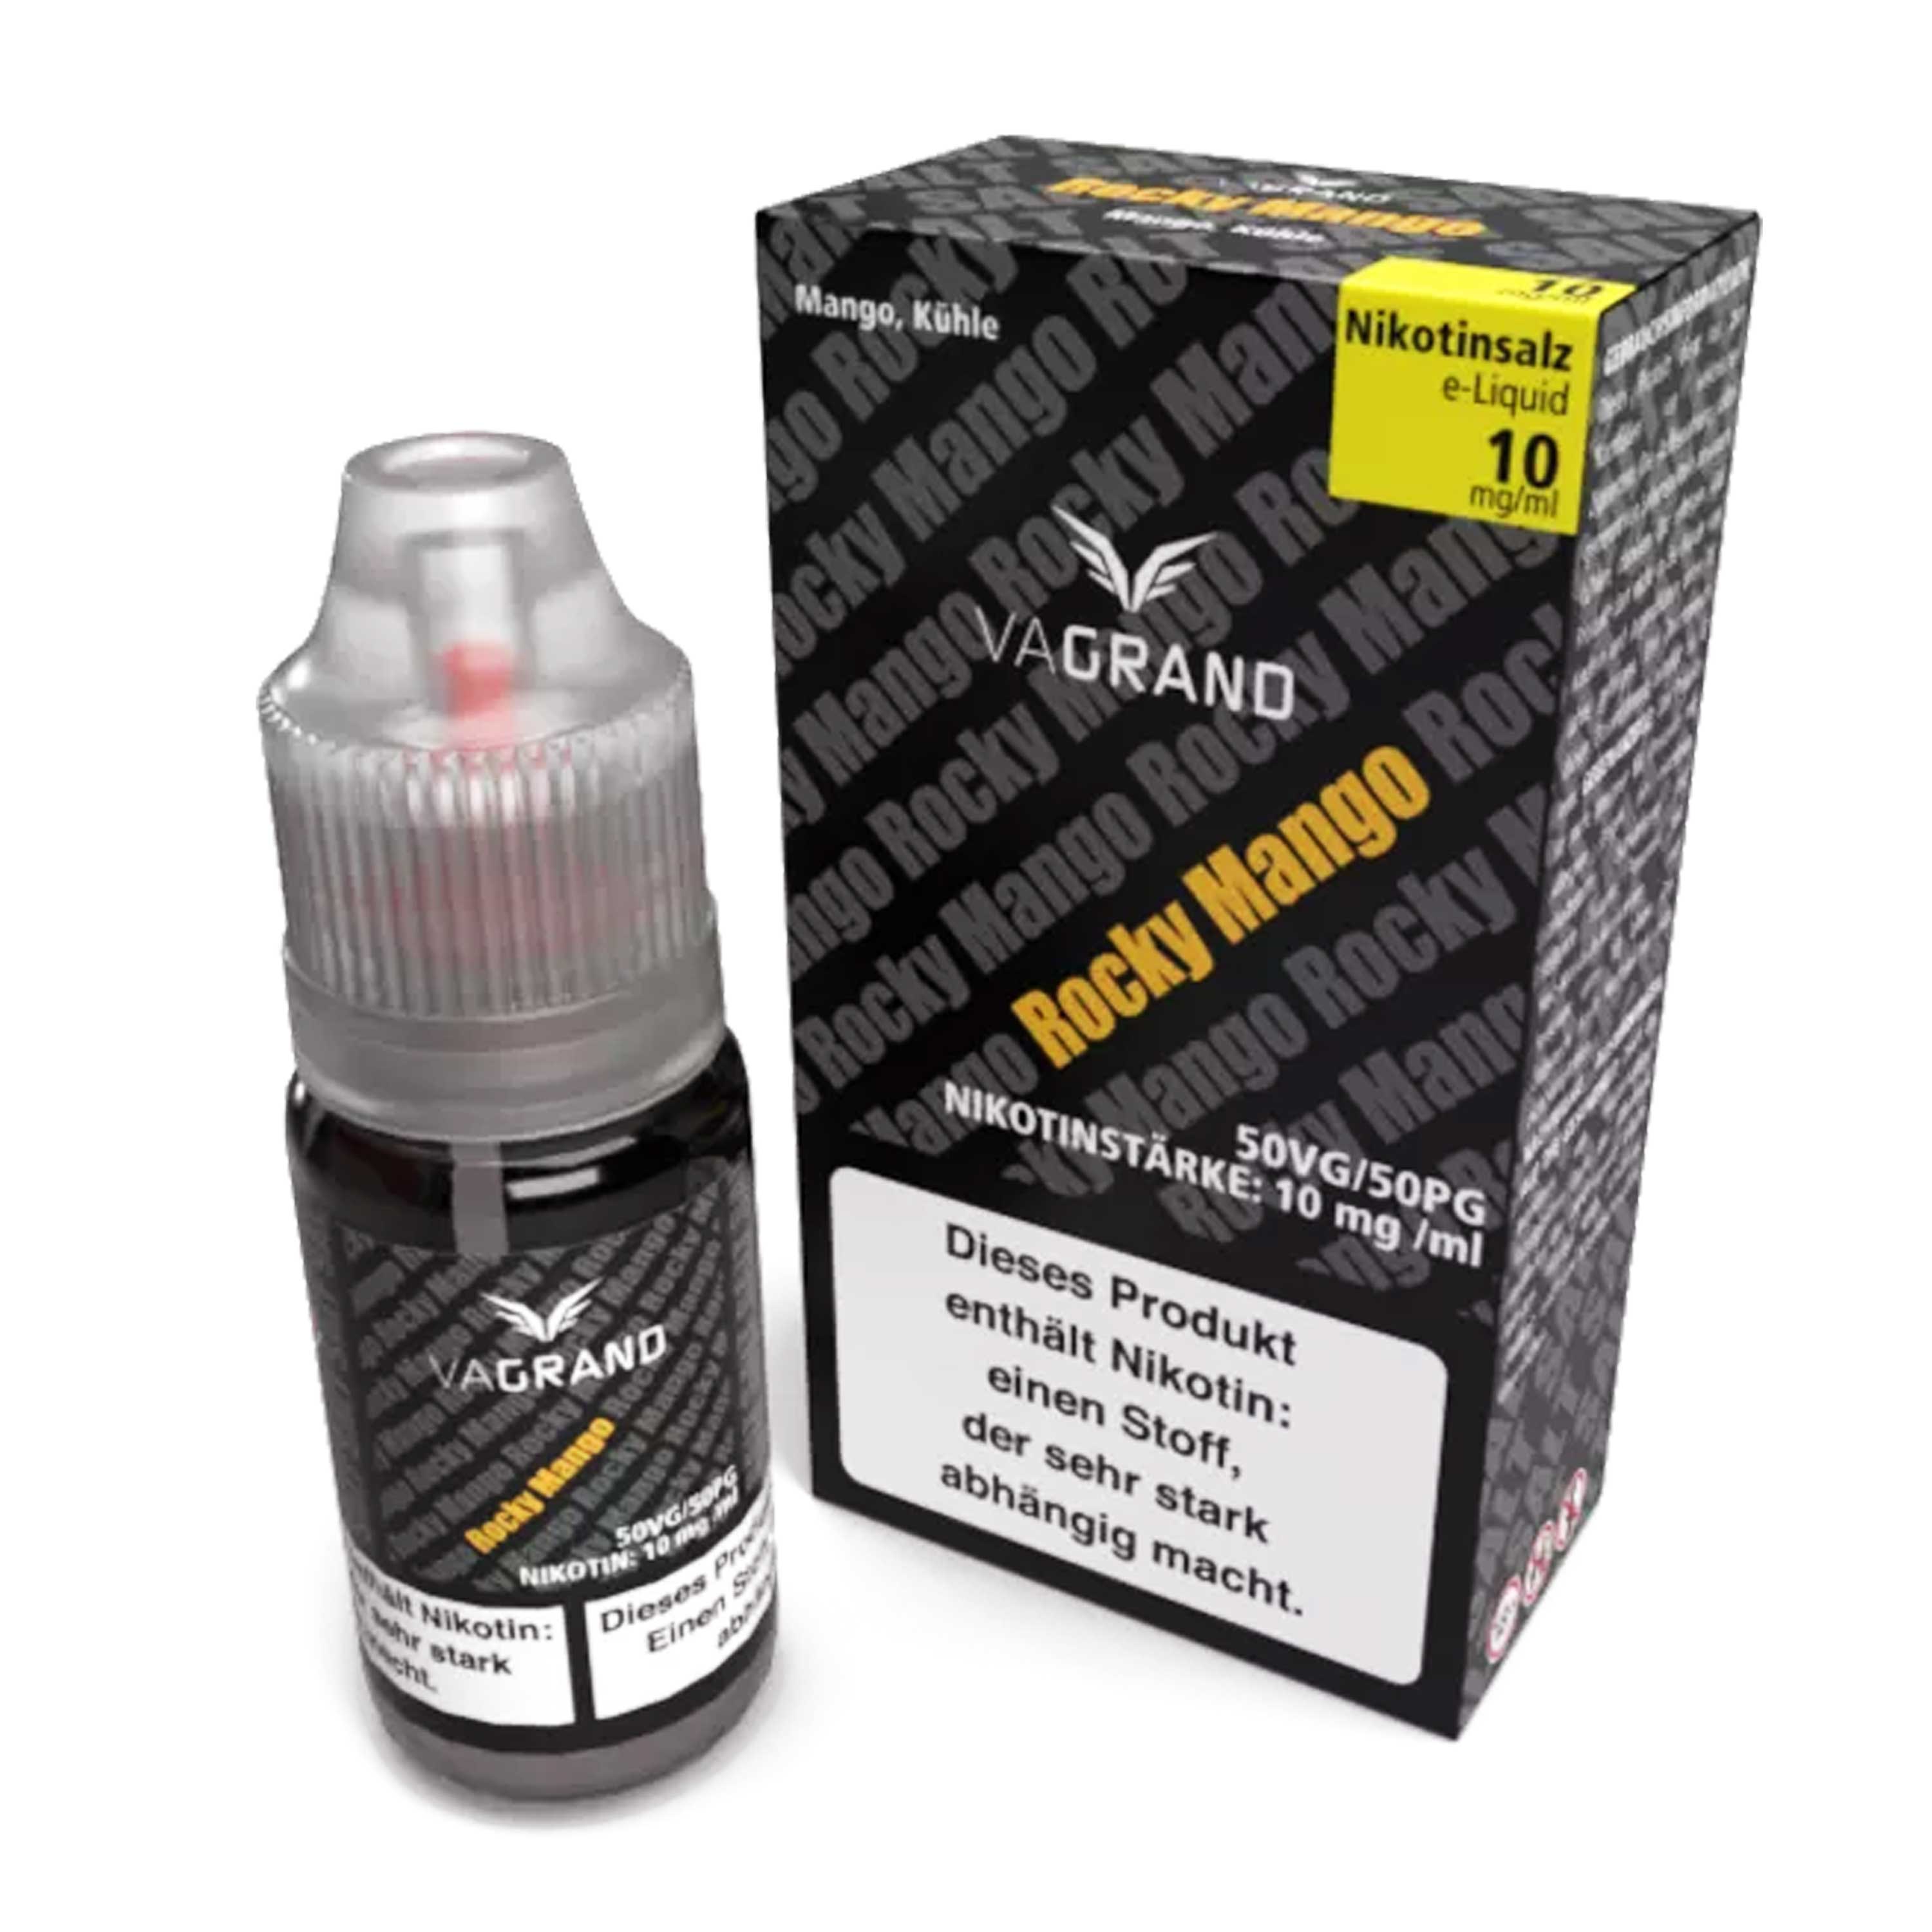 Vagrand - Rocky Mango - Nikotinsalz Liquid (10 ml)